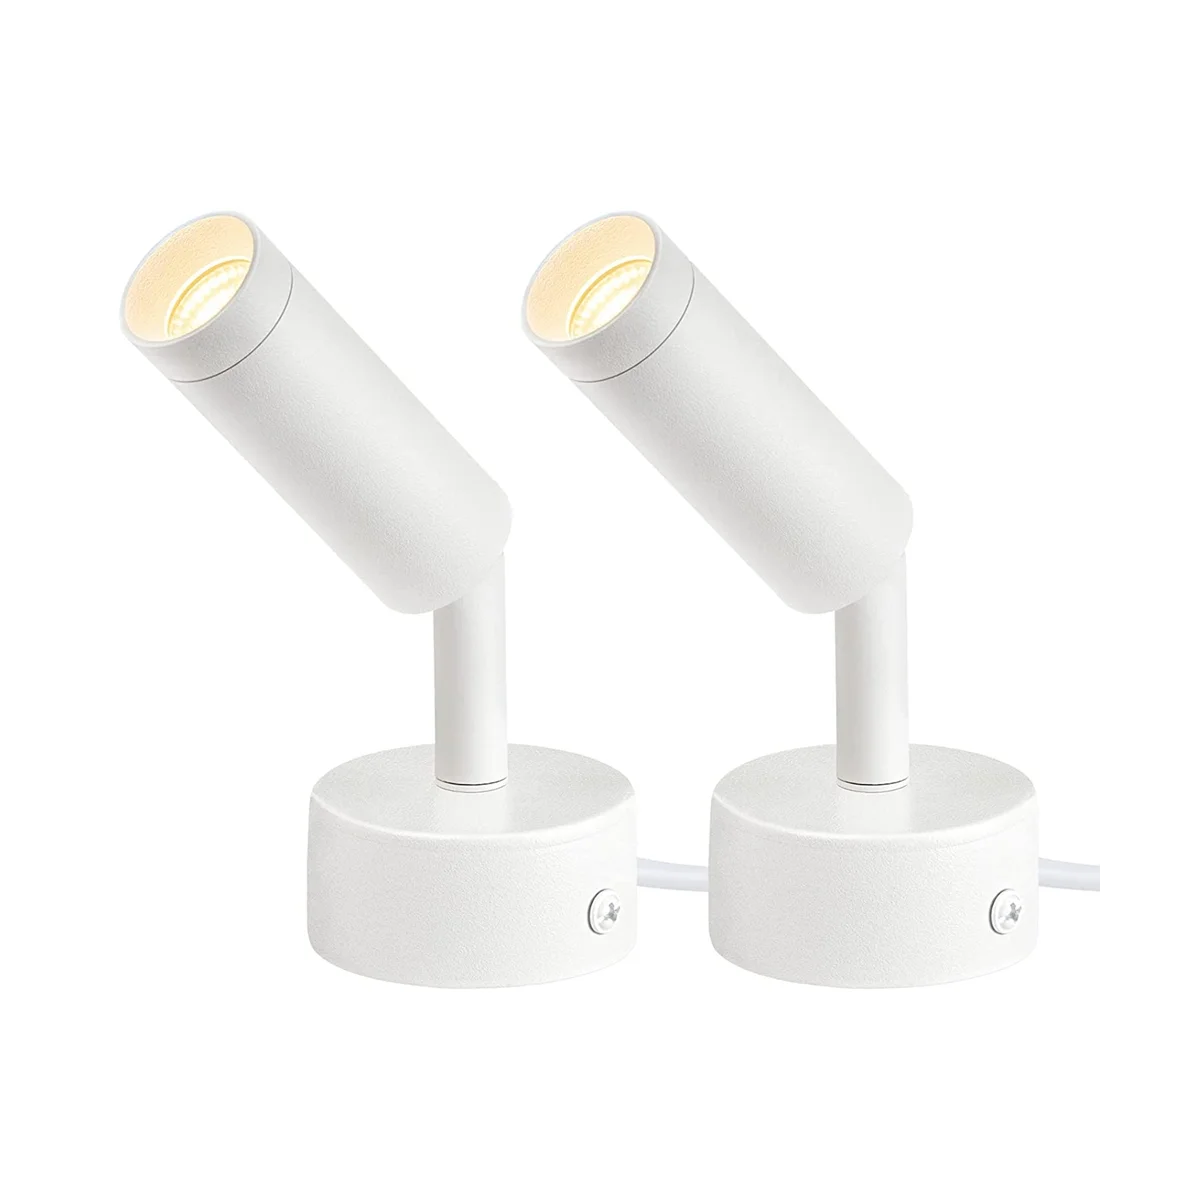 

Точечные светильники 3 Вт для помещений, Регулируемый комнатный напольный светильник, Регулируемая яркость, Точечный светильник для растений, направленное освещение, белая розетка стандарта США